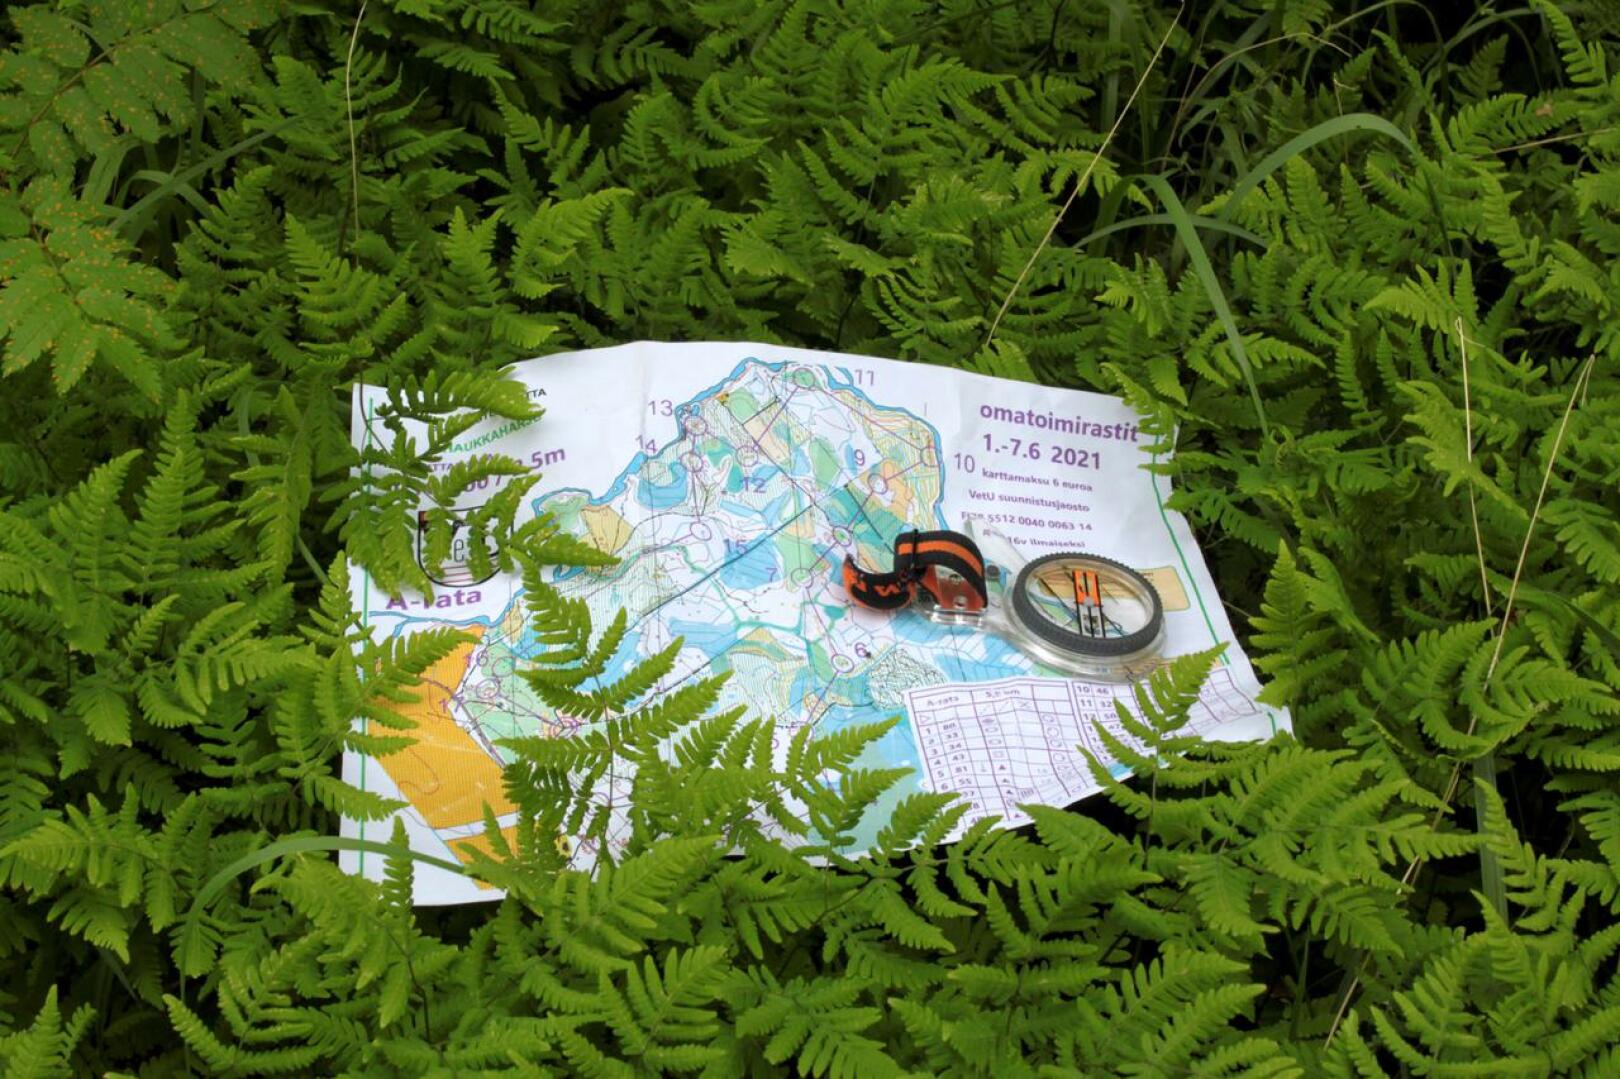 Kompassi ja paperinen kartta on hyvä olla mukana marjastusreissulla. Kompassin käyttö kannattaa opetella jo ennen metsään menemistä.